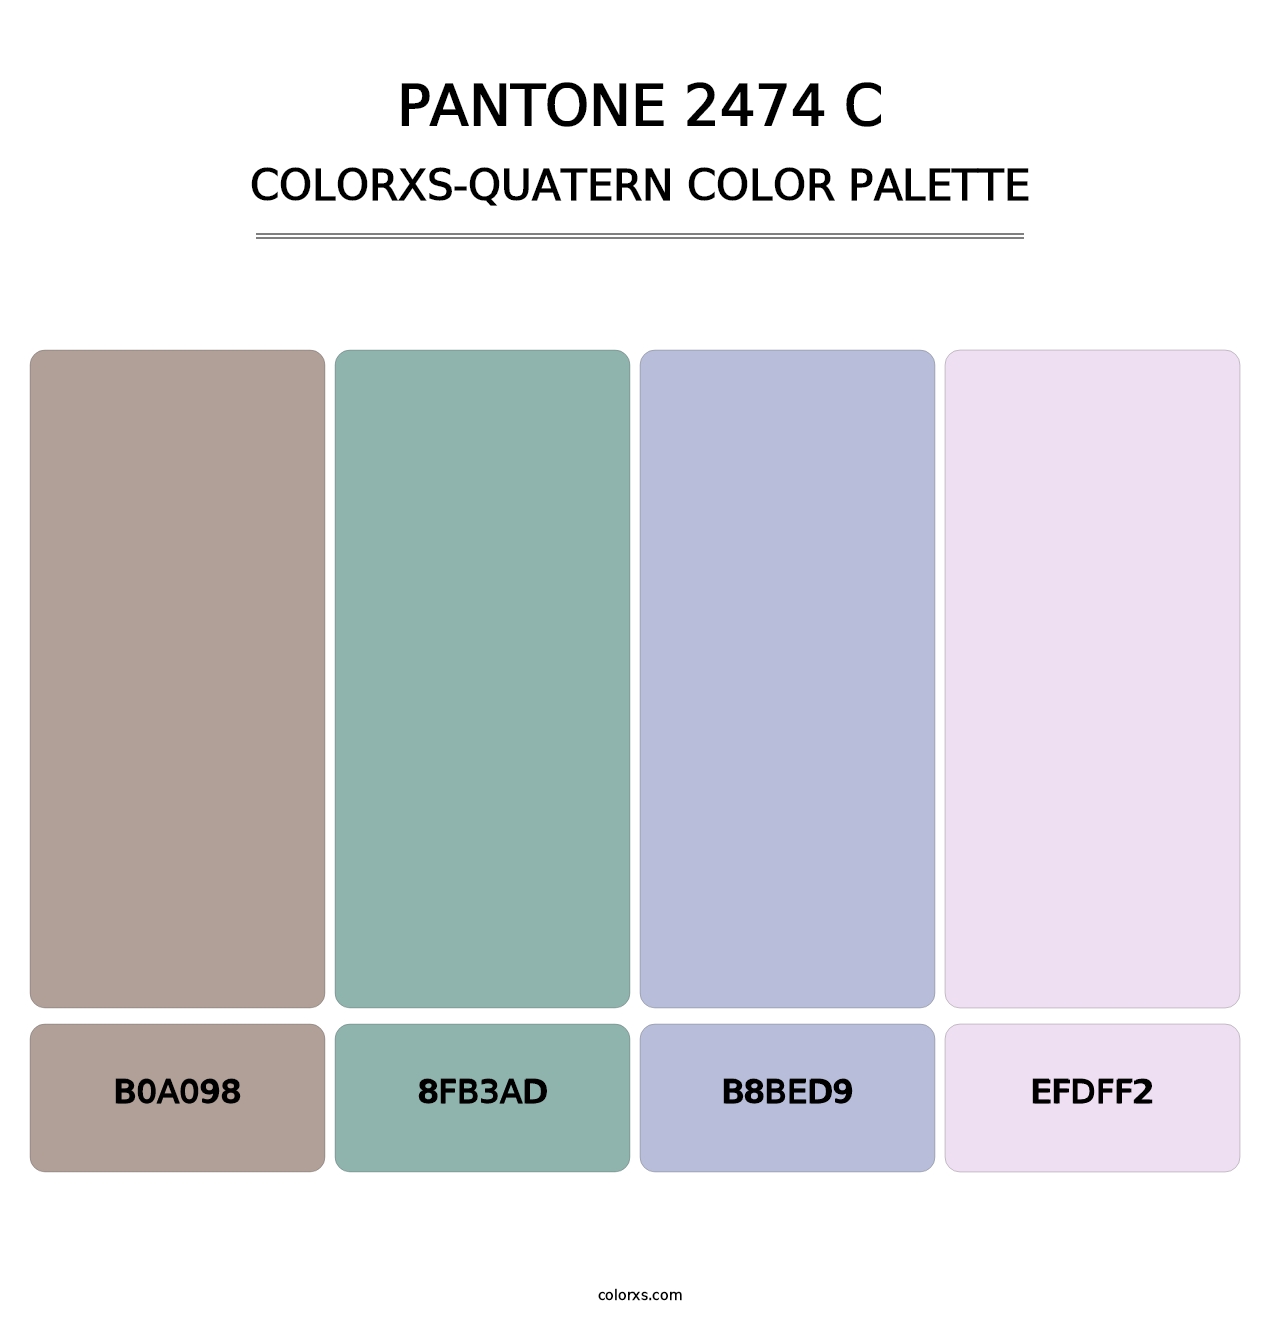 PANTONE 2474 C - Colorxs Quatern Palette